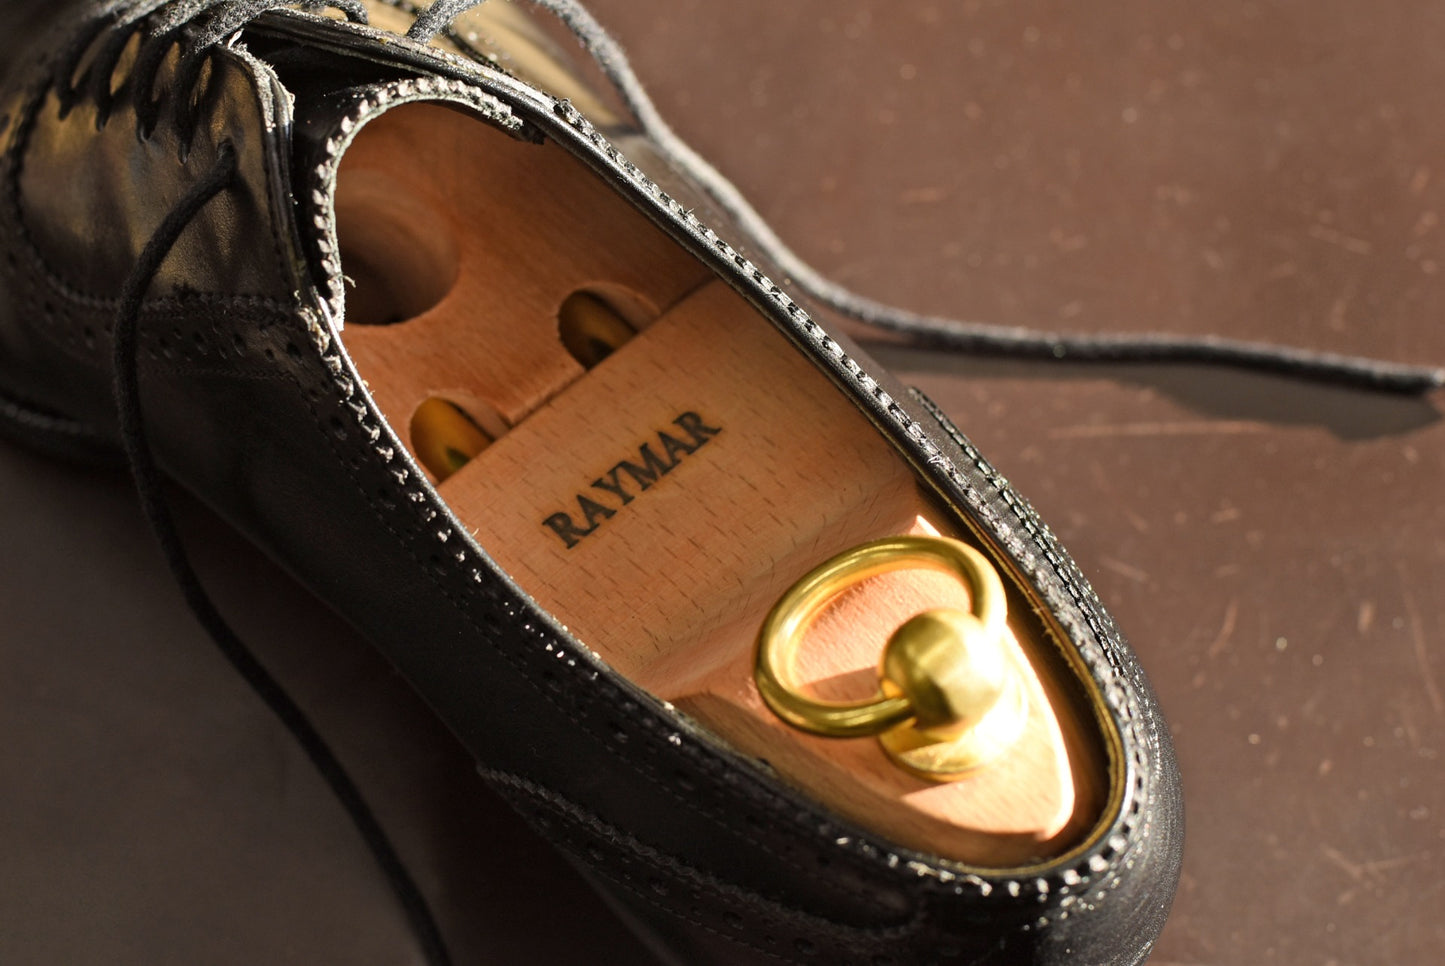 シューツリー シューキーパー 革靴 保形 吸湿 皺伸ばし RAYMAR レイマー 純正 ツインチューブ 木製 ブナ ワックスフィニッシュ RMST